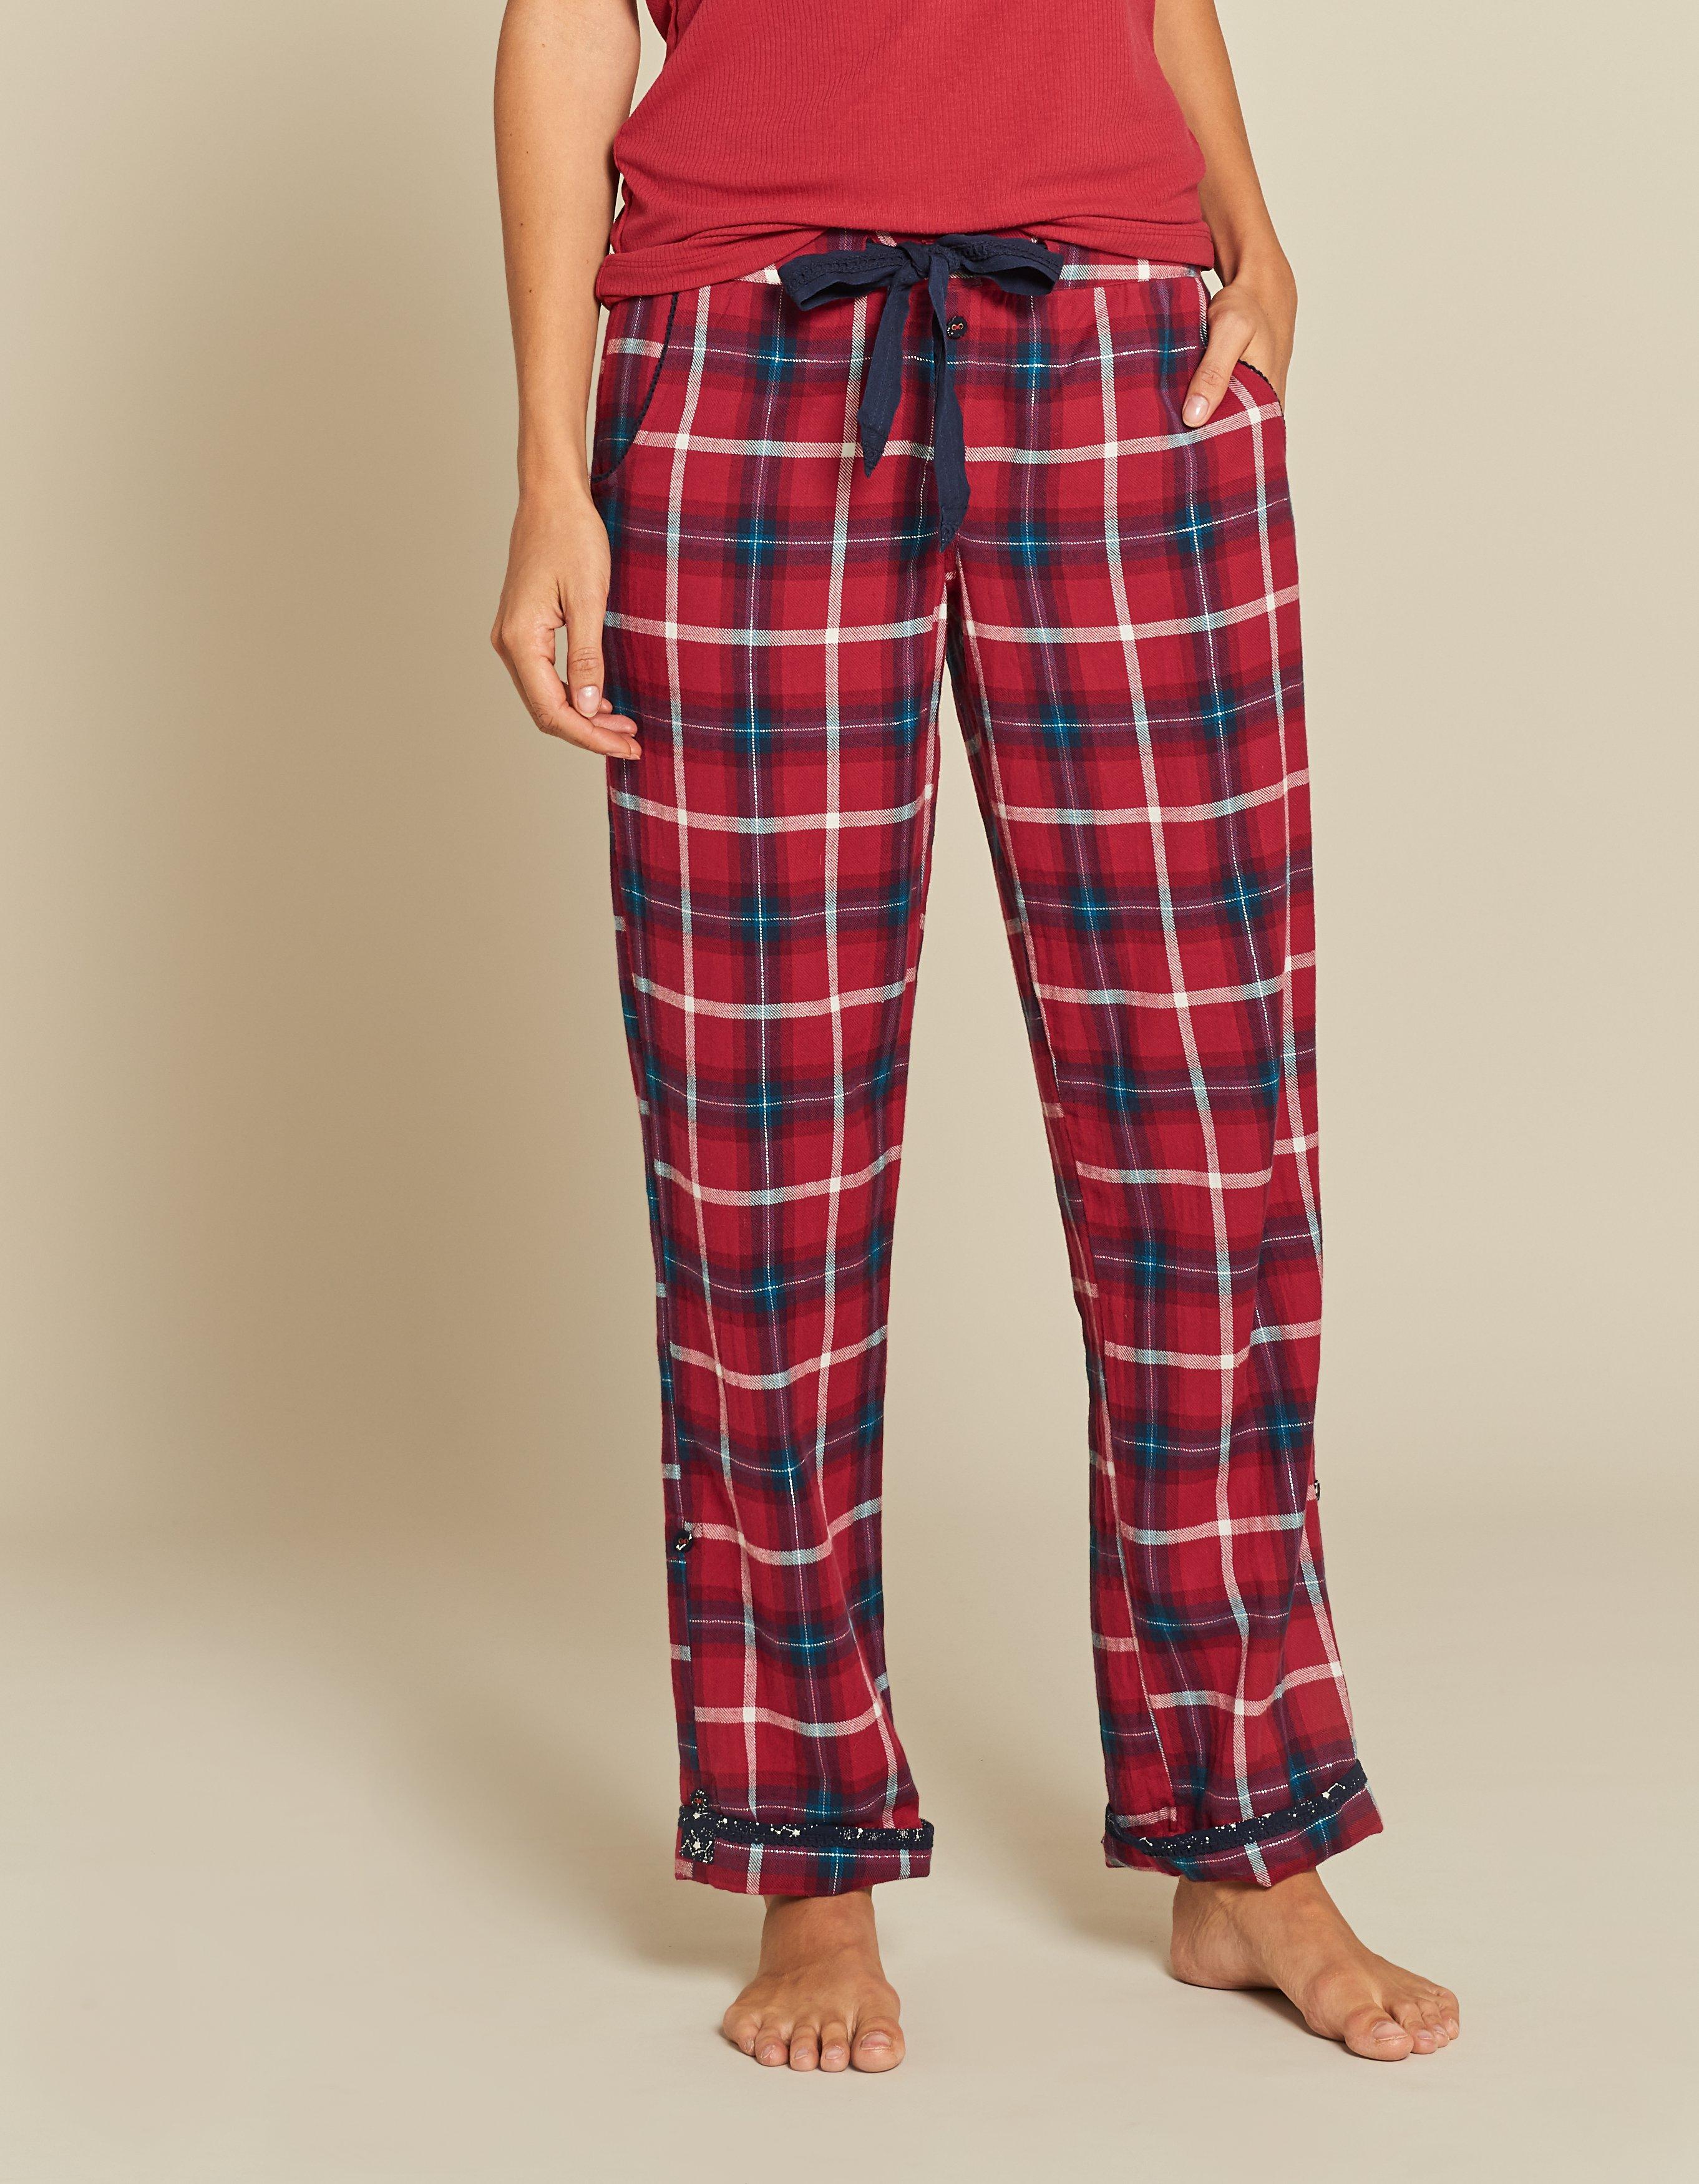 Women | Clothing | Nightwear & Pajamas | FatFace.com